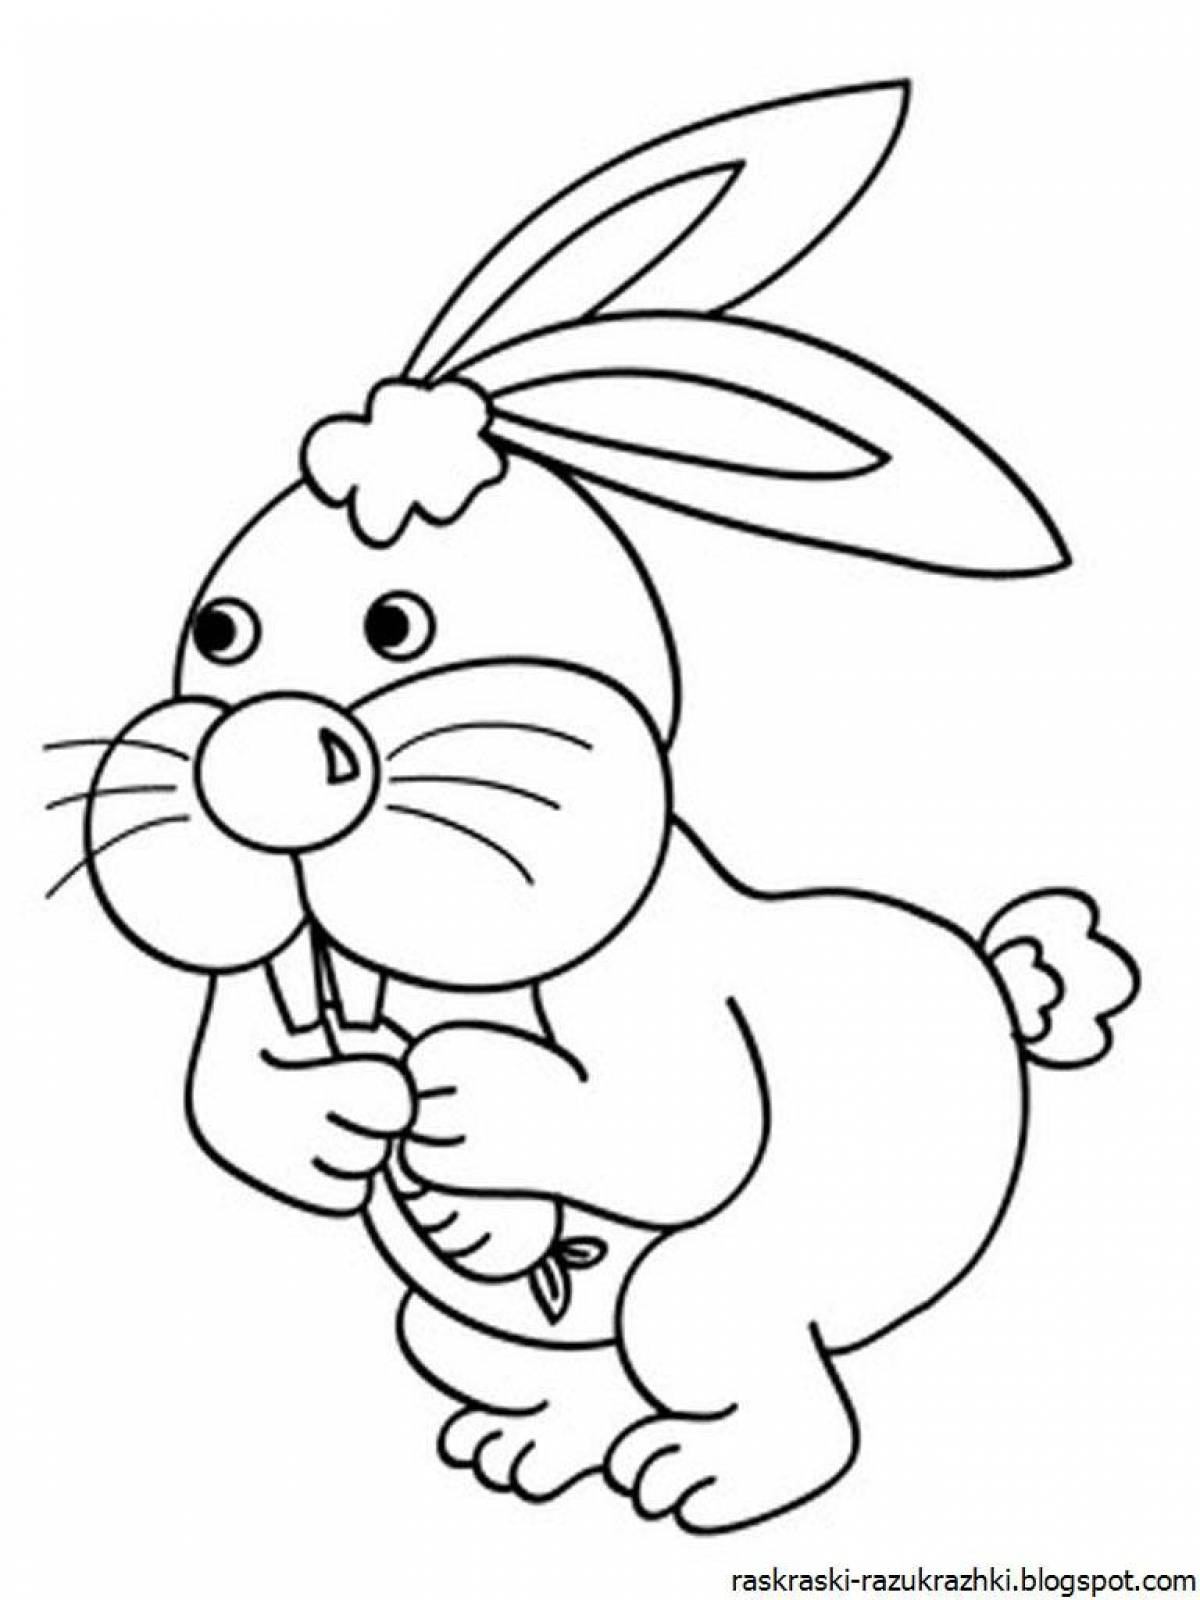 Wavy bunny coloring book